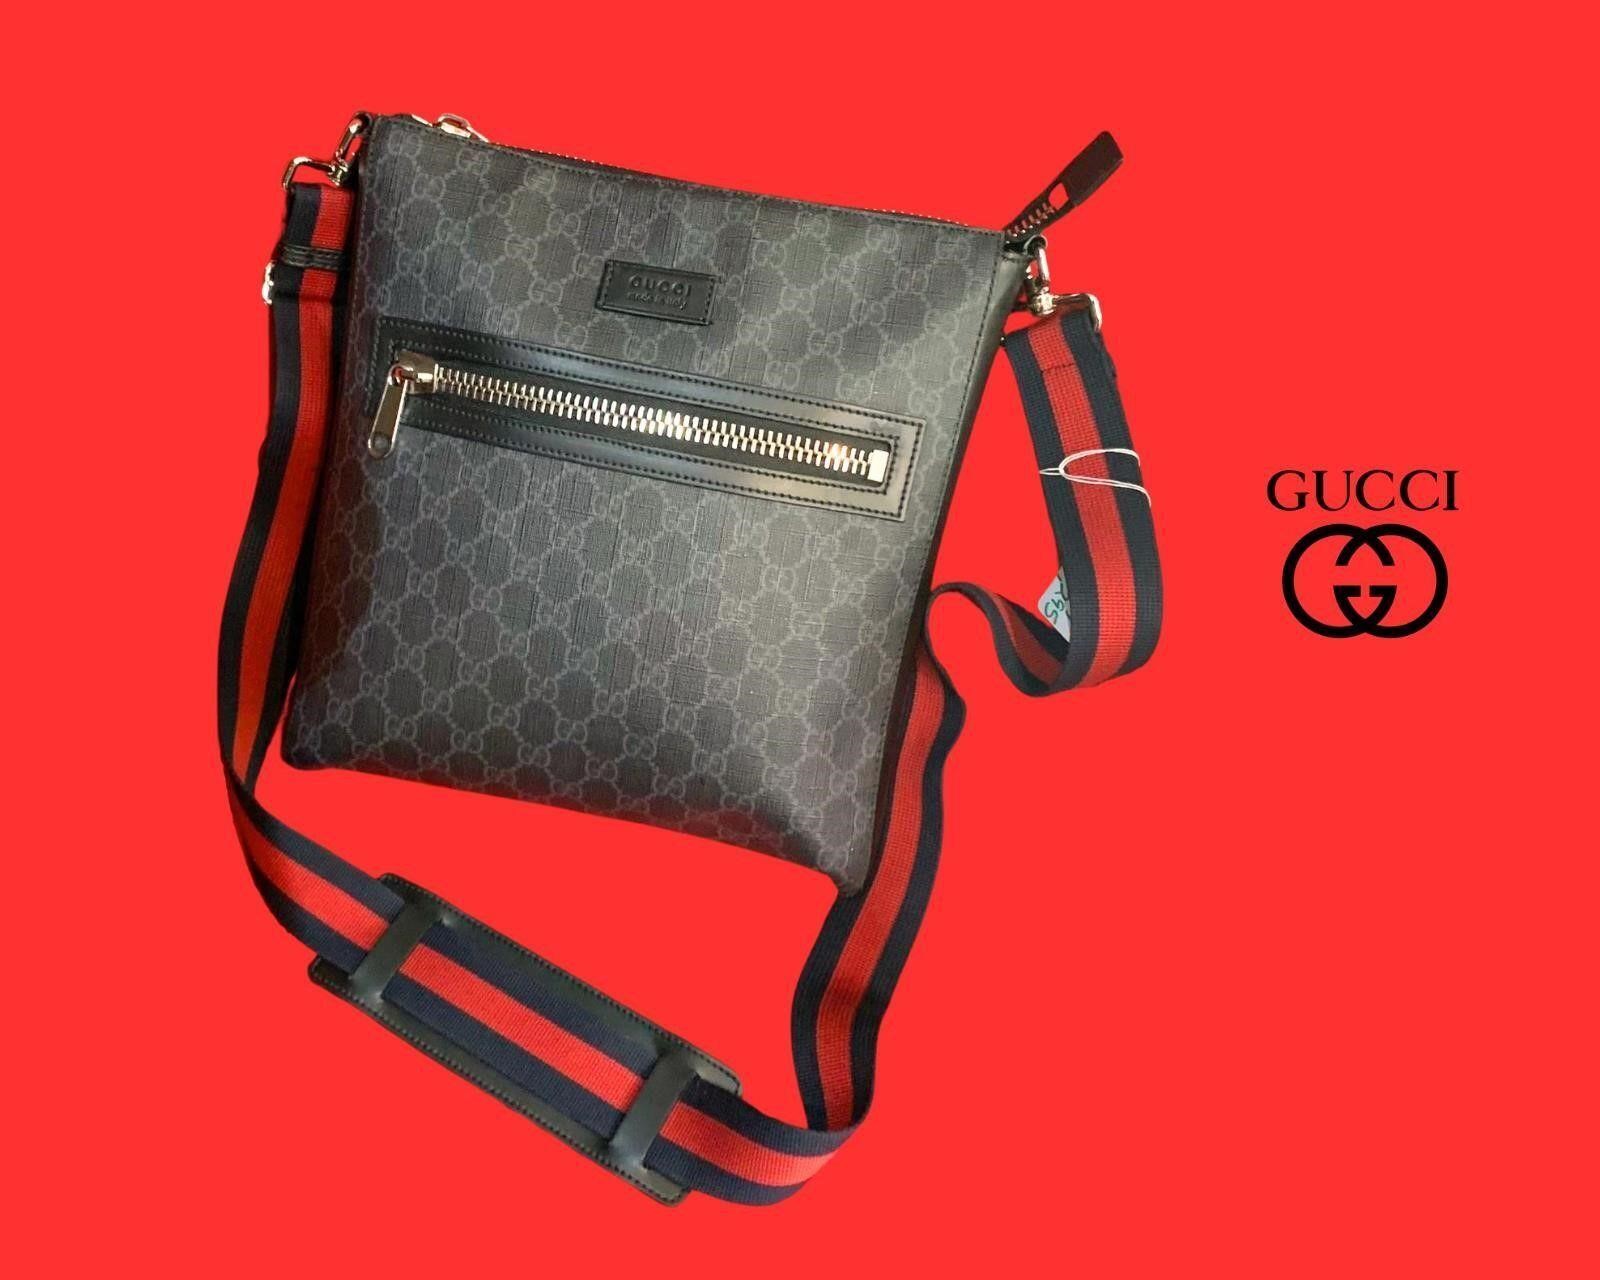 133 Louis Vuitton, Gucci, Chanel, Hermes